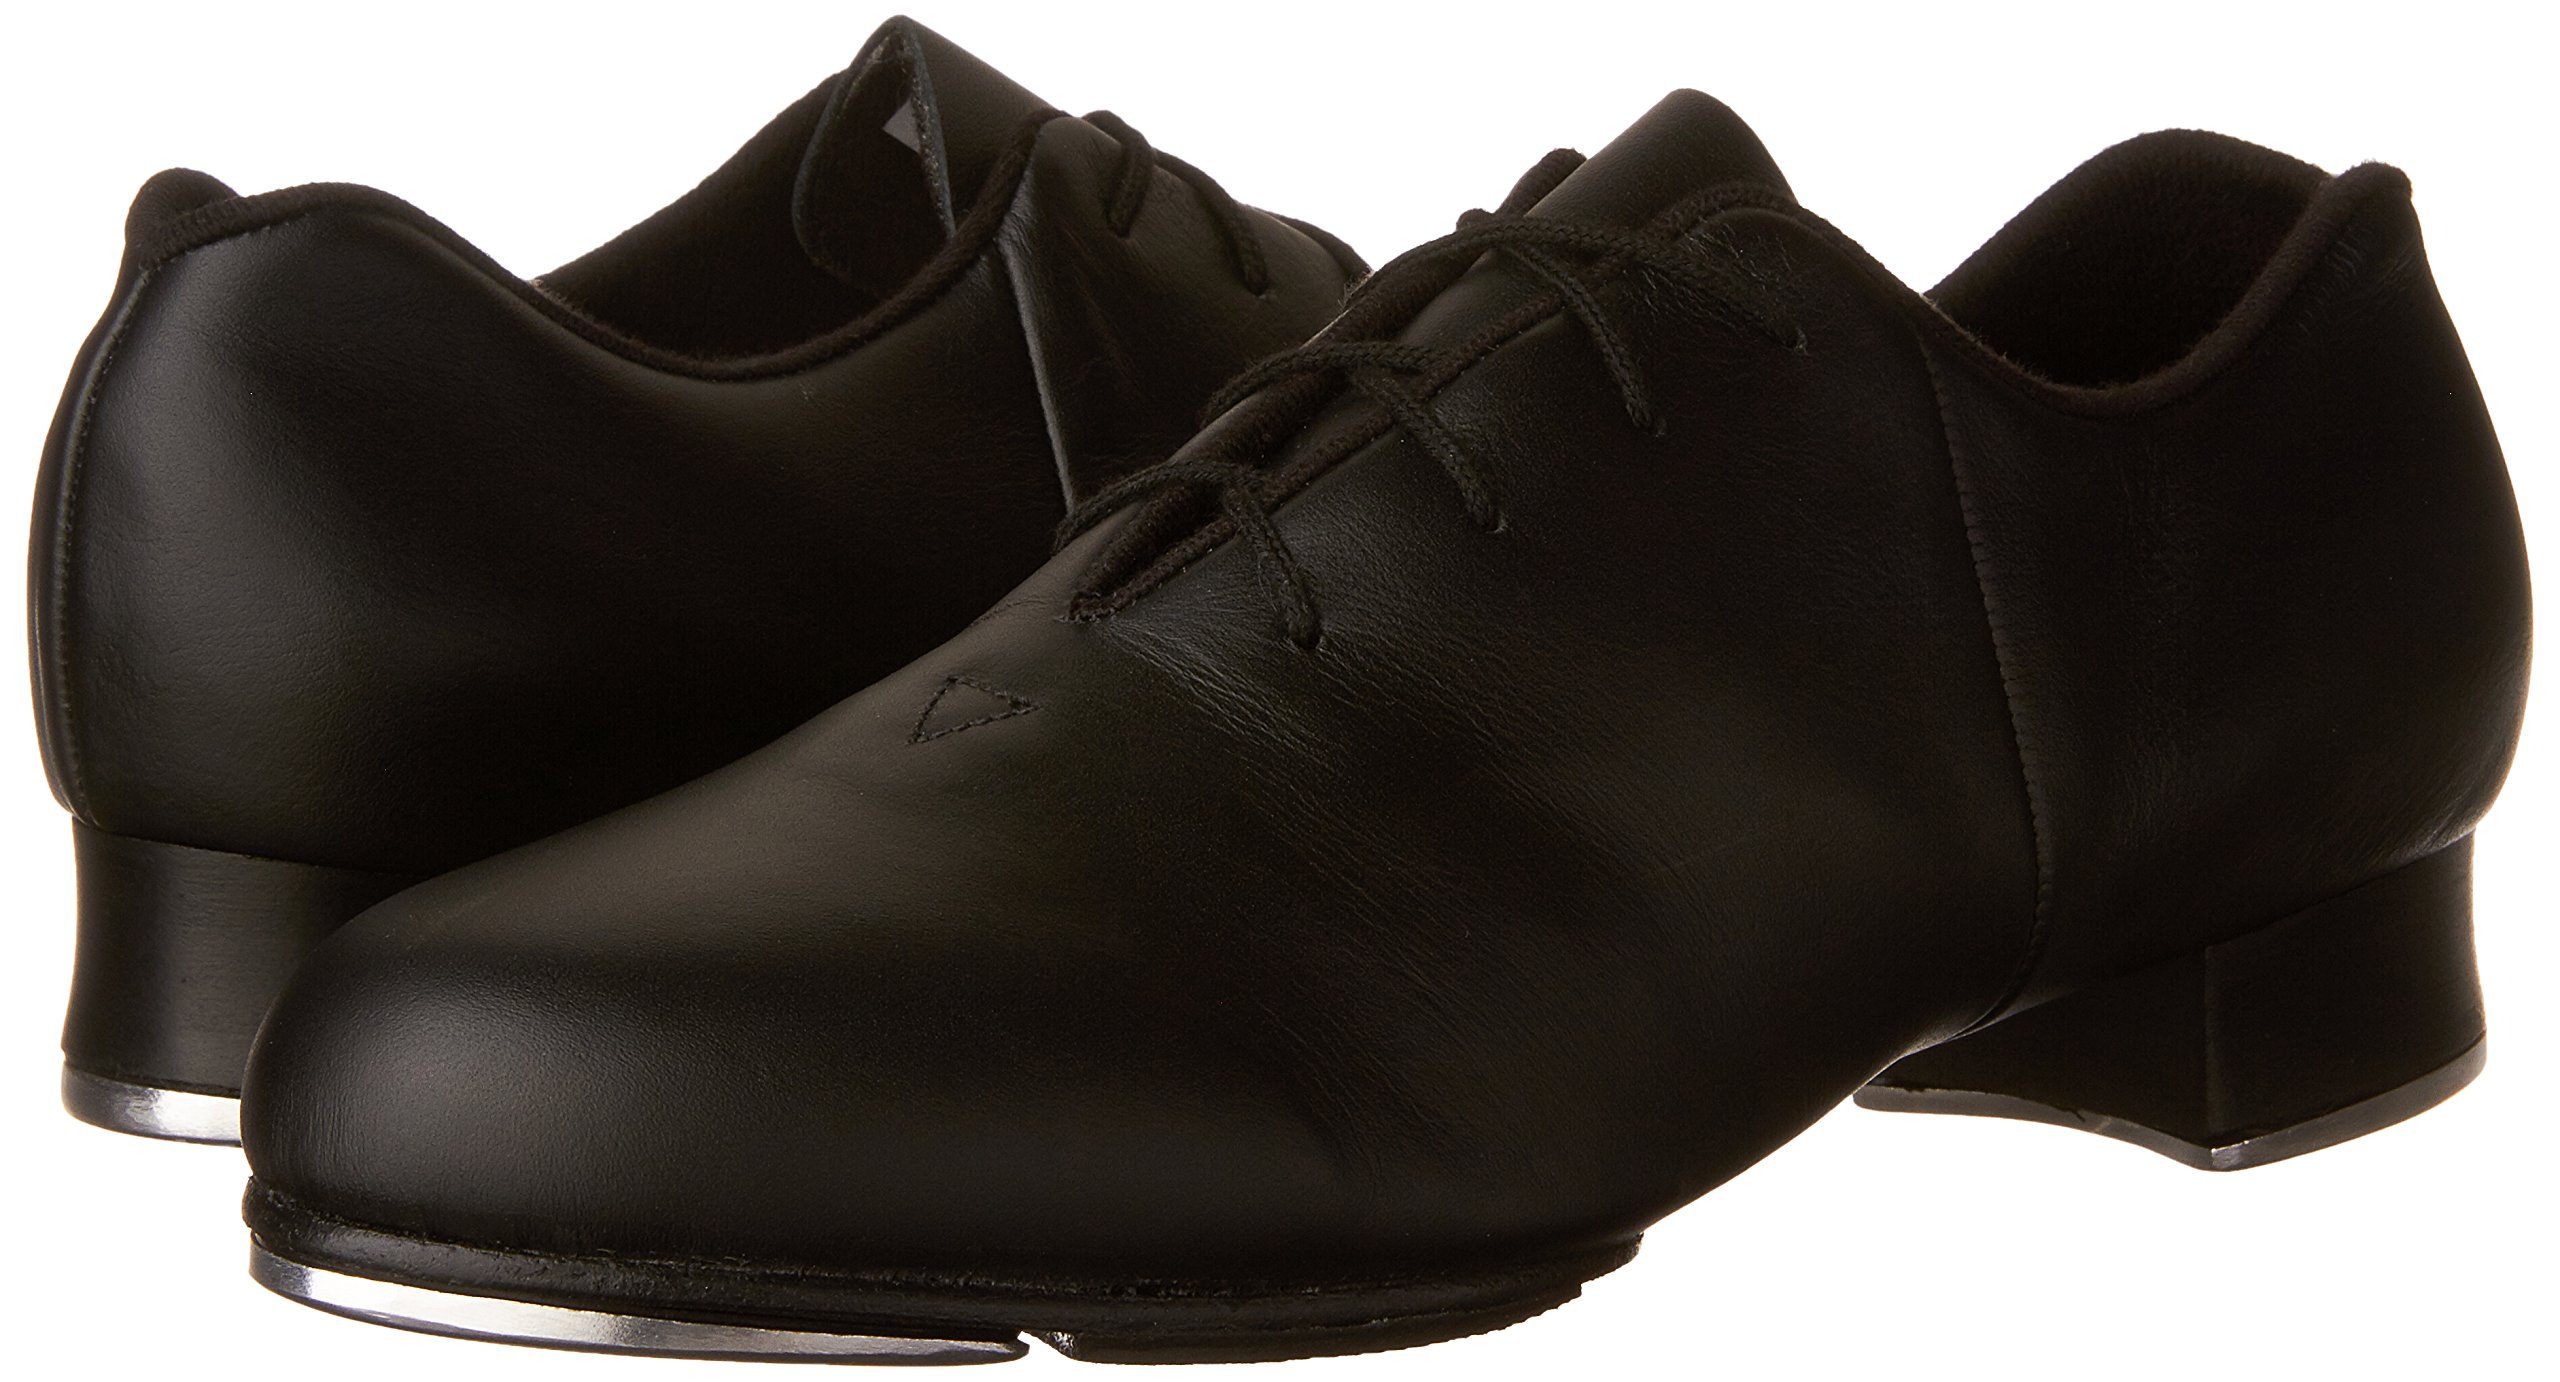 Bloch Dance Women's Tap-Flex Leather Tap Shoe